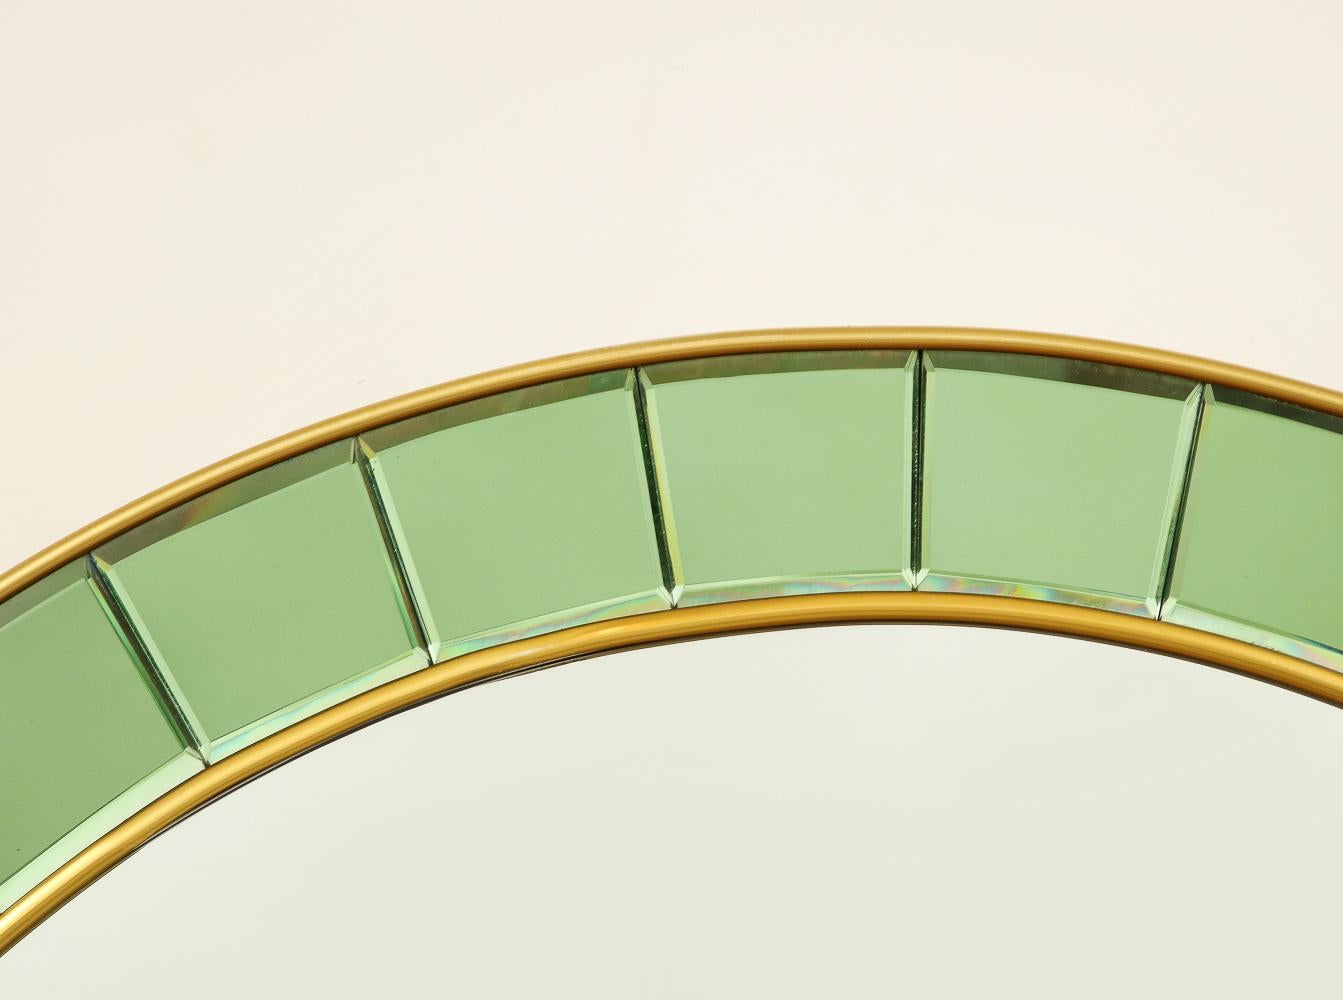 Messing, Spiegel, grüne Glasfliesen. Eleganter Wandspiegel mit zartgrünen Glasfliesen, die einen zentralen, runden Spiegel umgeben, und einer Messingverzierung.